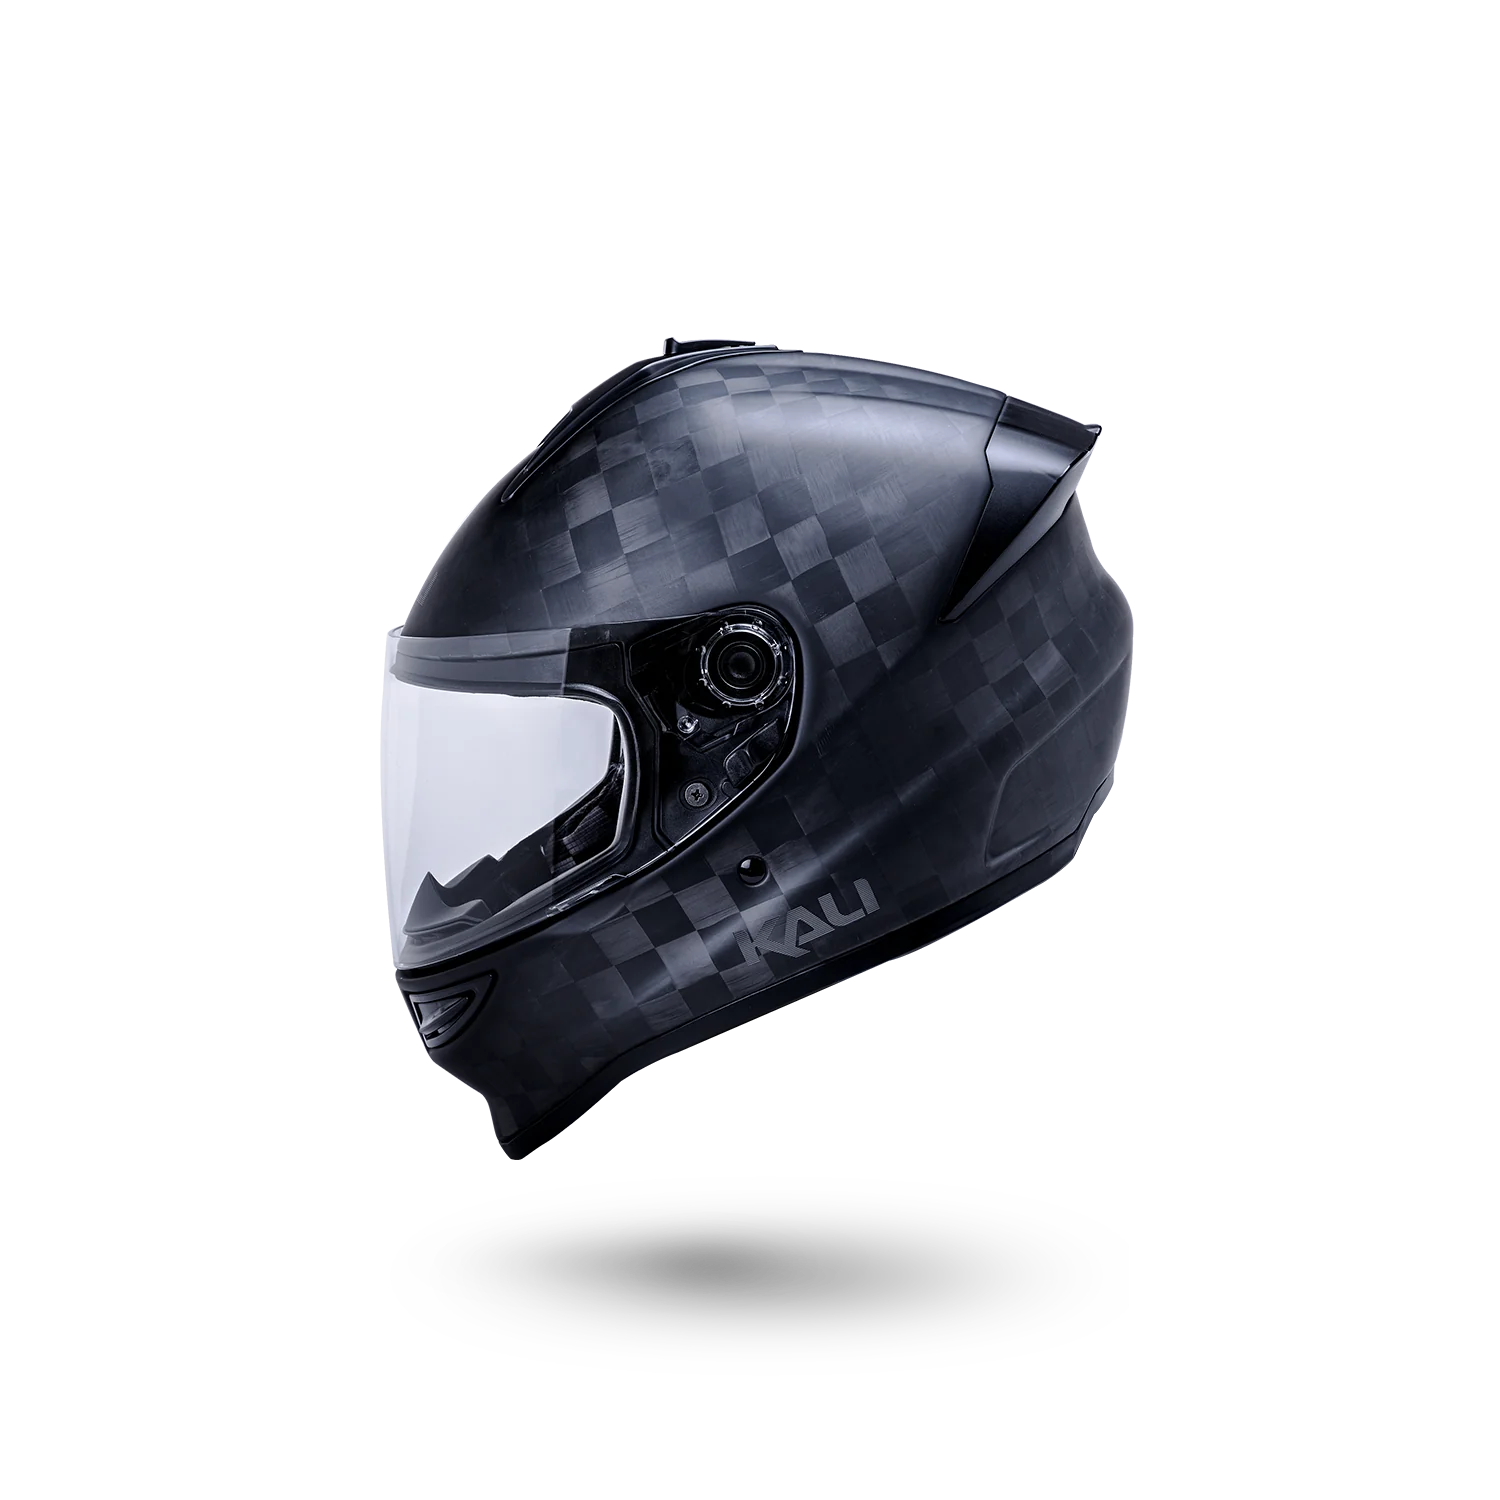 Kali Octane Matte Carbon Full Face Motorcycle Helmet